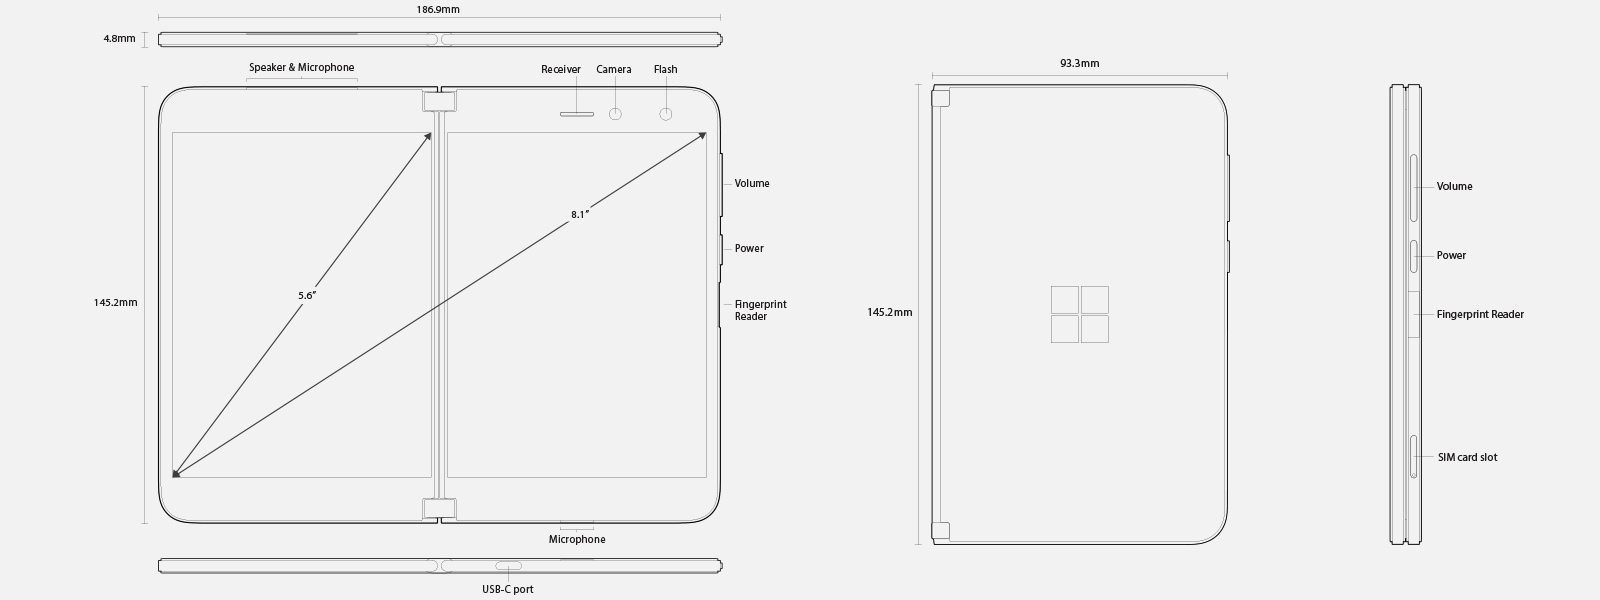 Diagrama técnico de Surface Duo que muestra las dimensiones, las características y los aspectos más destacados del hardware.  Los detalles completos se pueden encontrar en las "especificaciones técnicas".